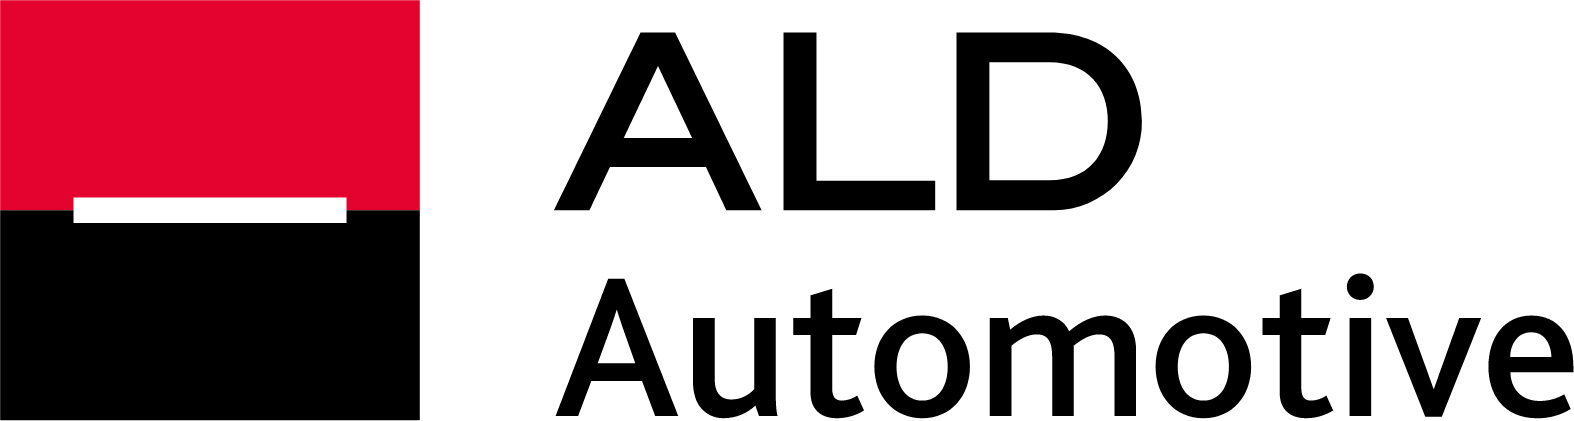 ALD Automotive logo large (transparent PNG)